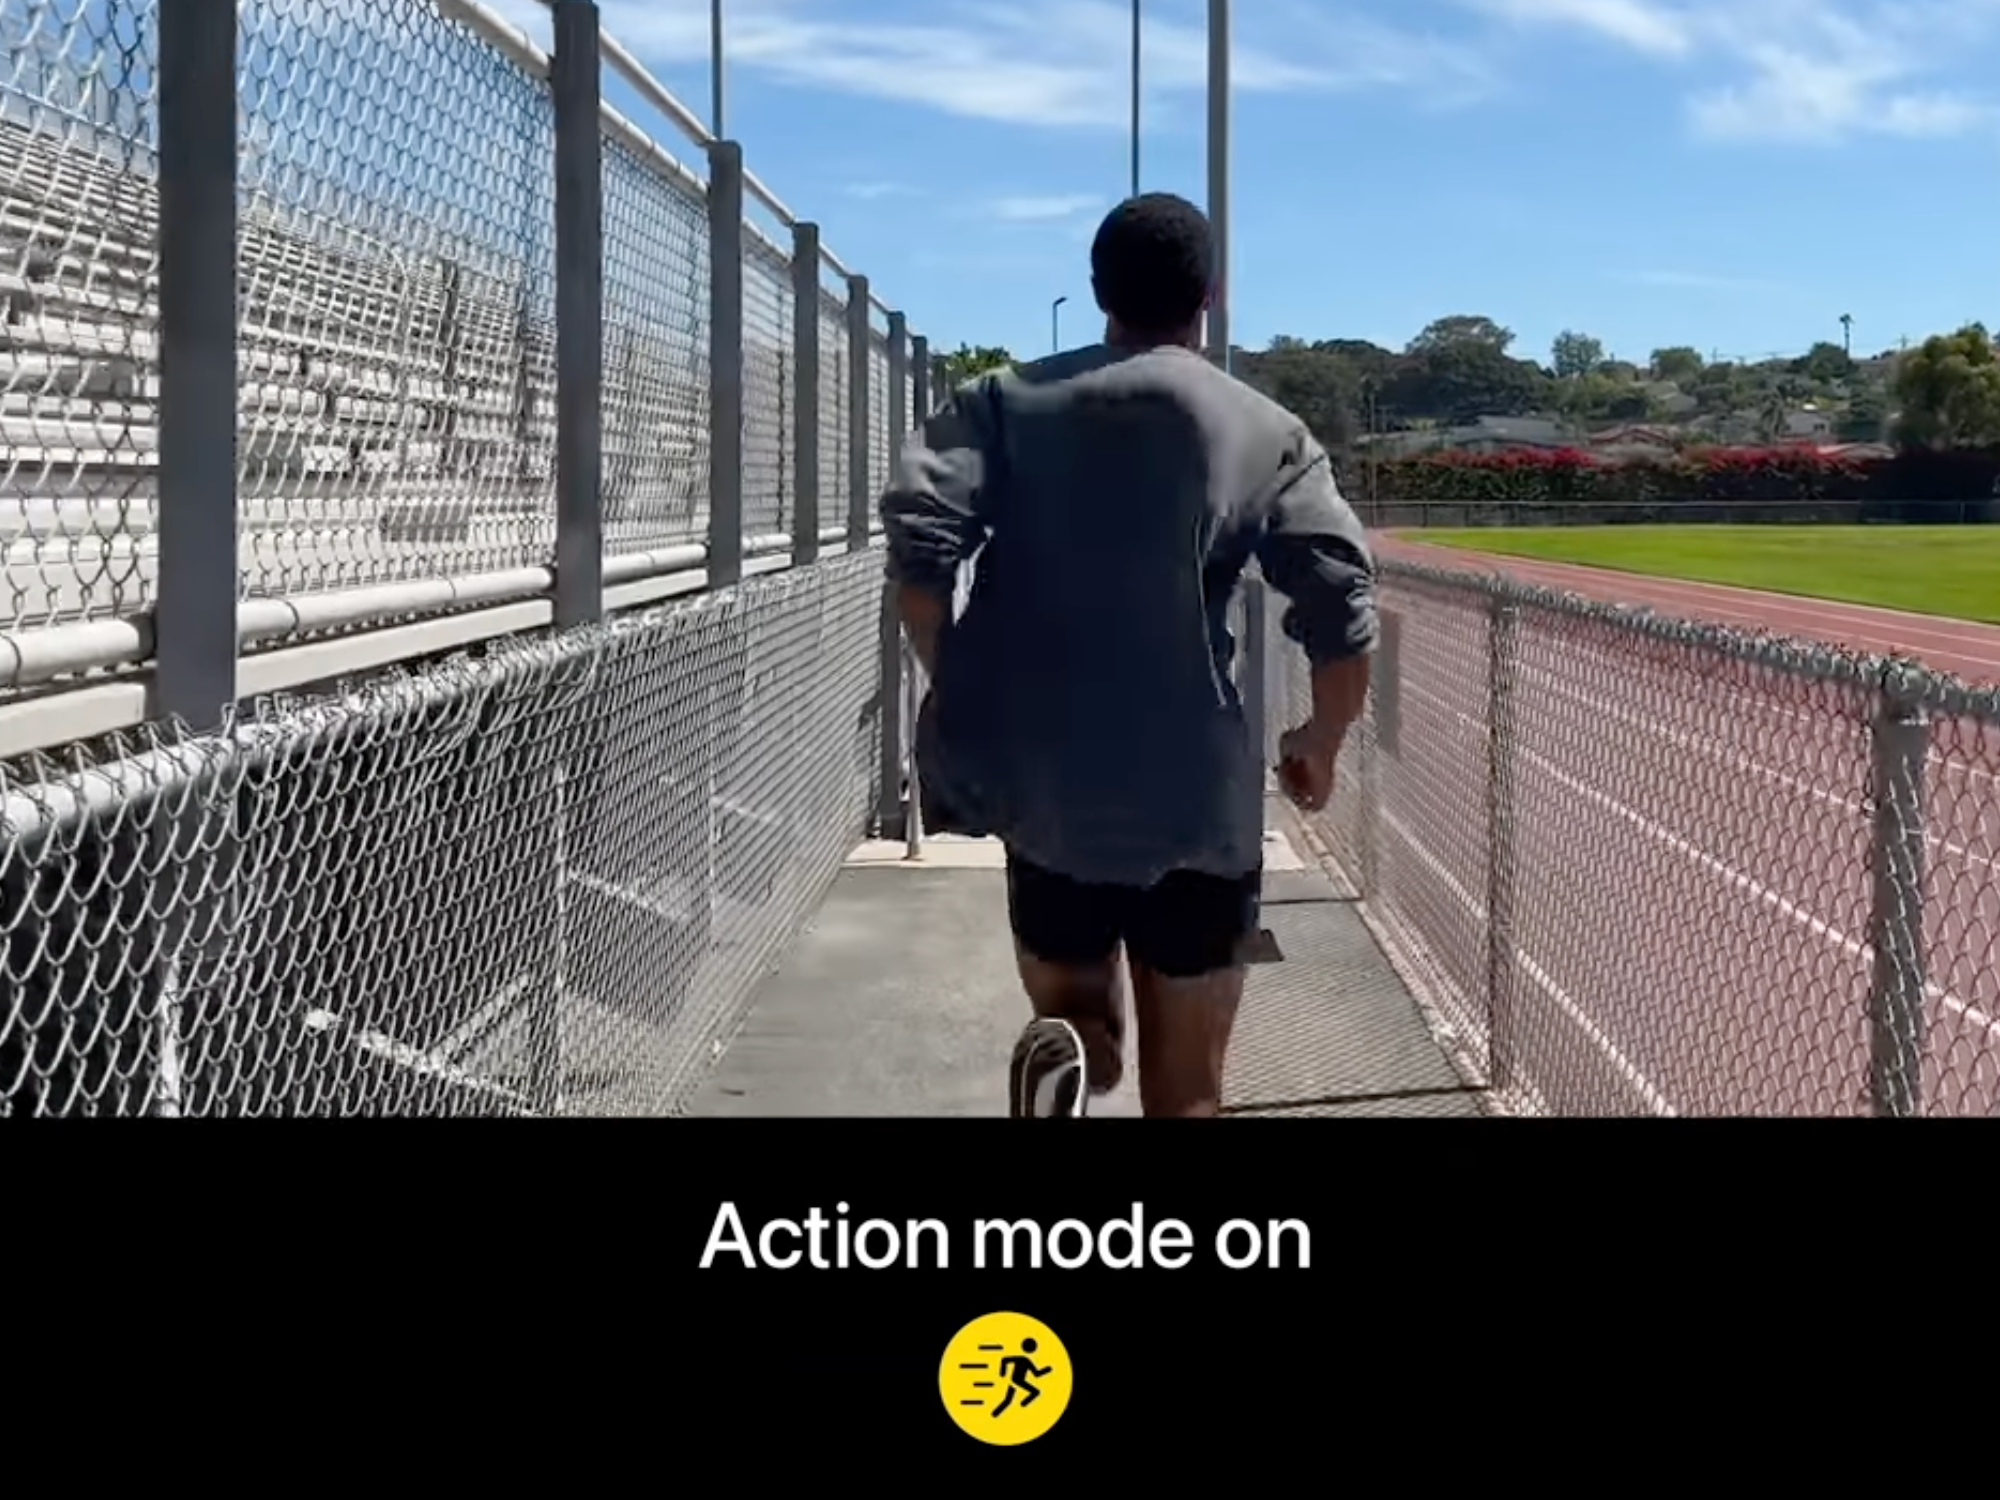 Action Mode - Előrelépés a stabilizálás terén